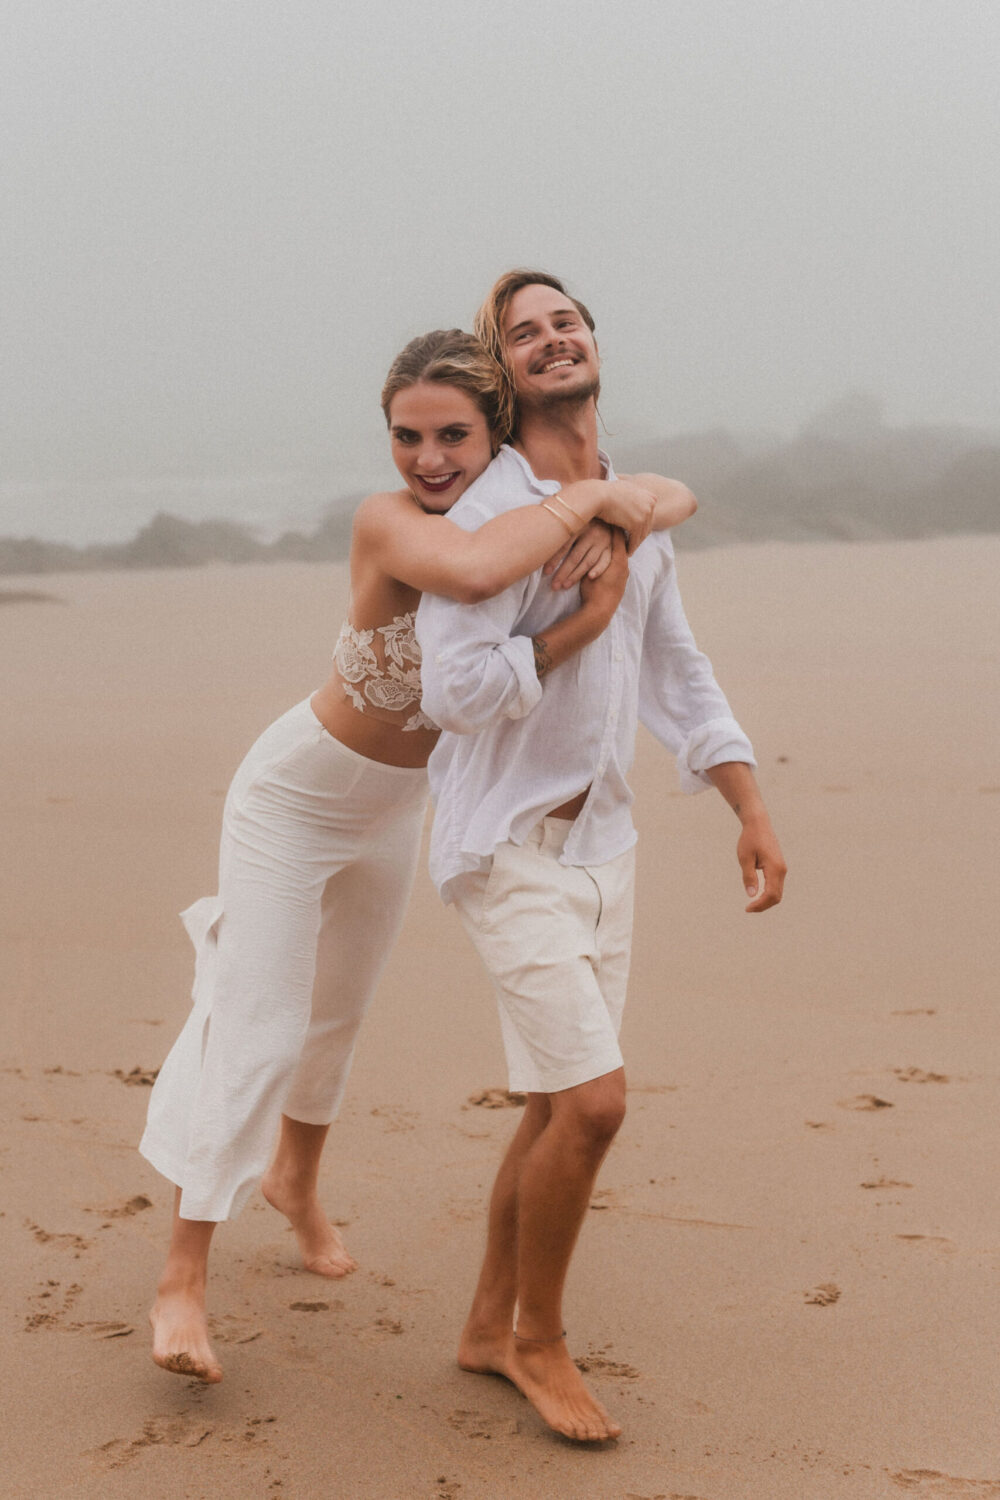 Deutsch: Braut umarmt Bräutigam von hinten am Strand Englisch: Bride hugs groom from behind on beach